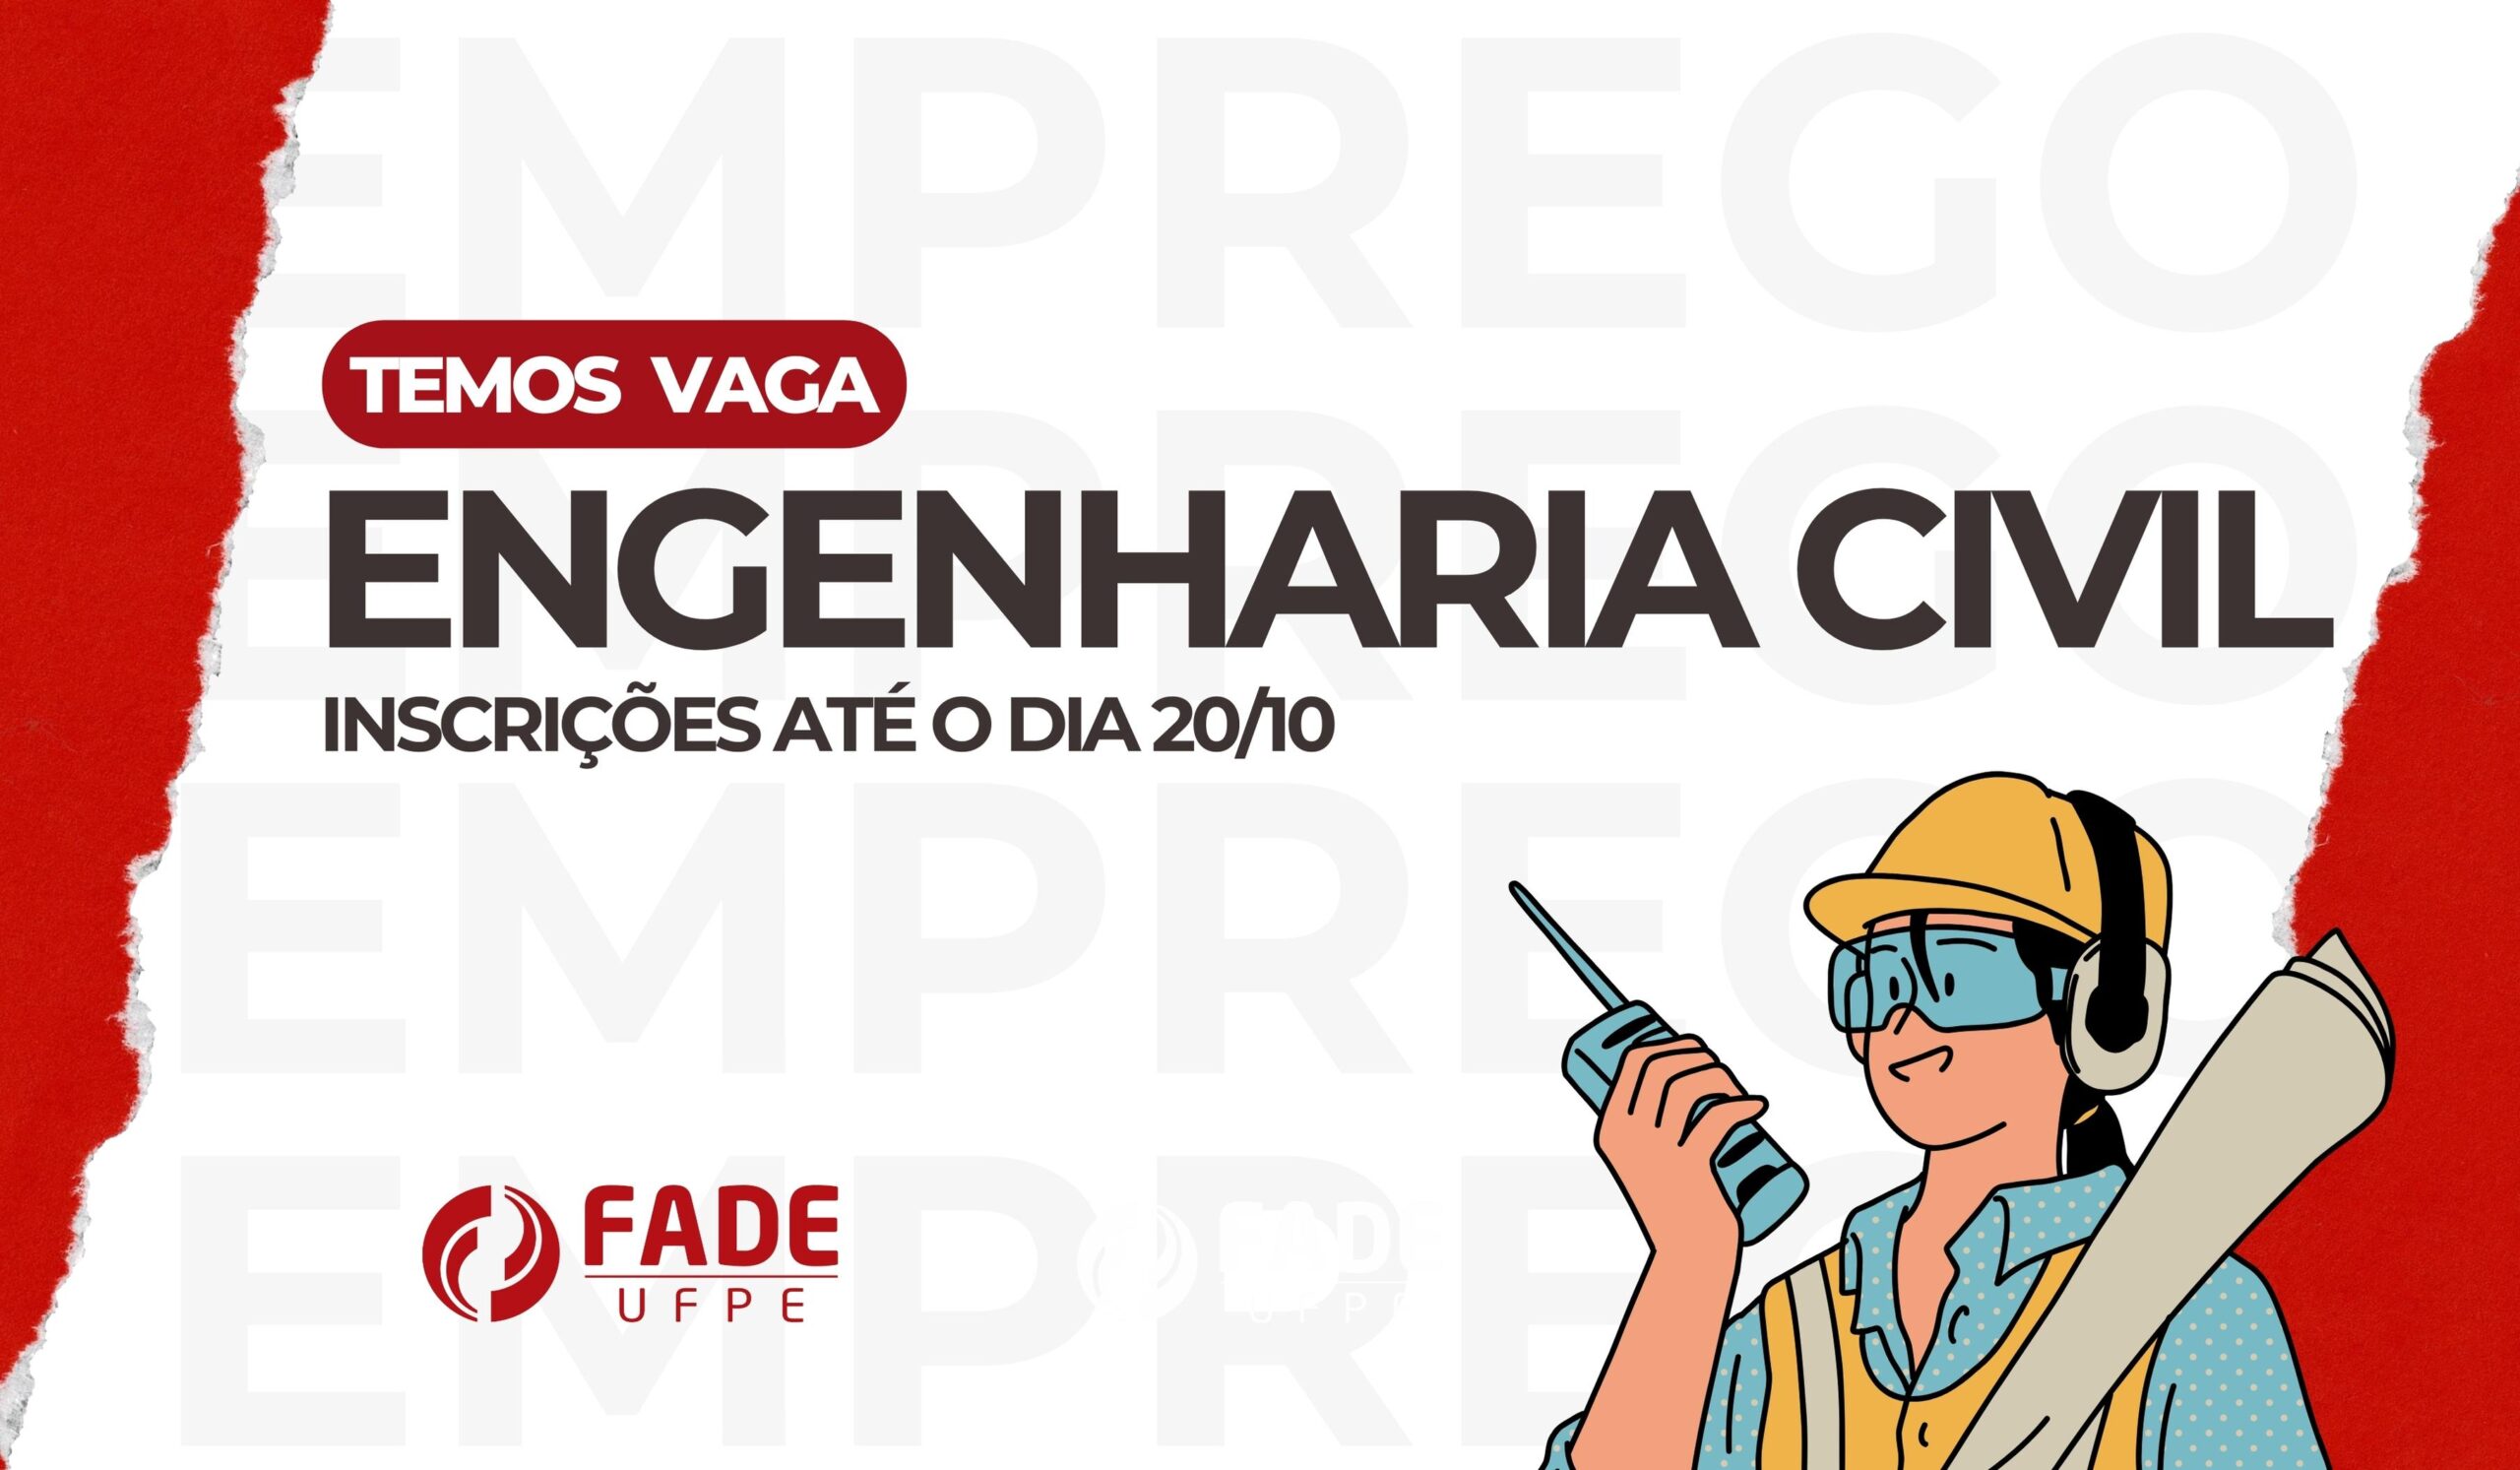 Engenharia Civil | Vaga Fade-UFPE